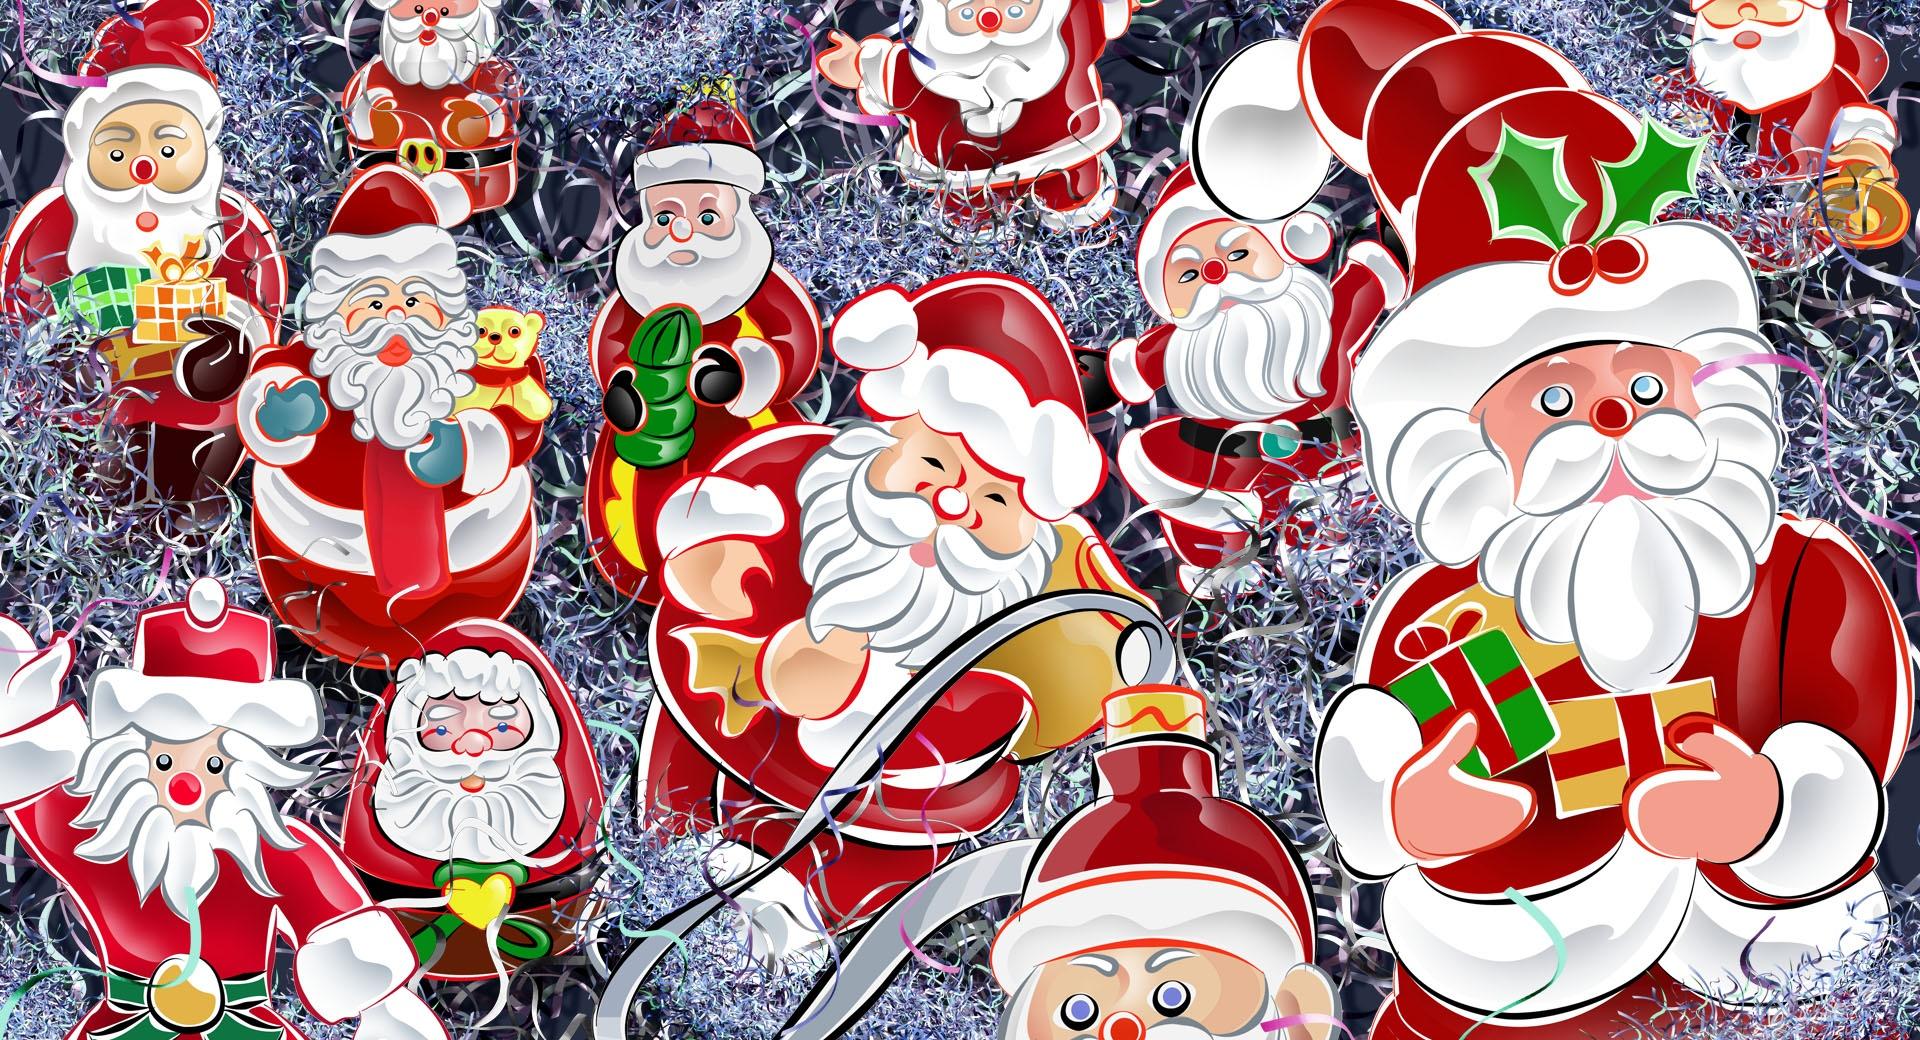 Lots Of Santas Christmas at 1024 x 1024 iPad size wallpapers HD quality